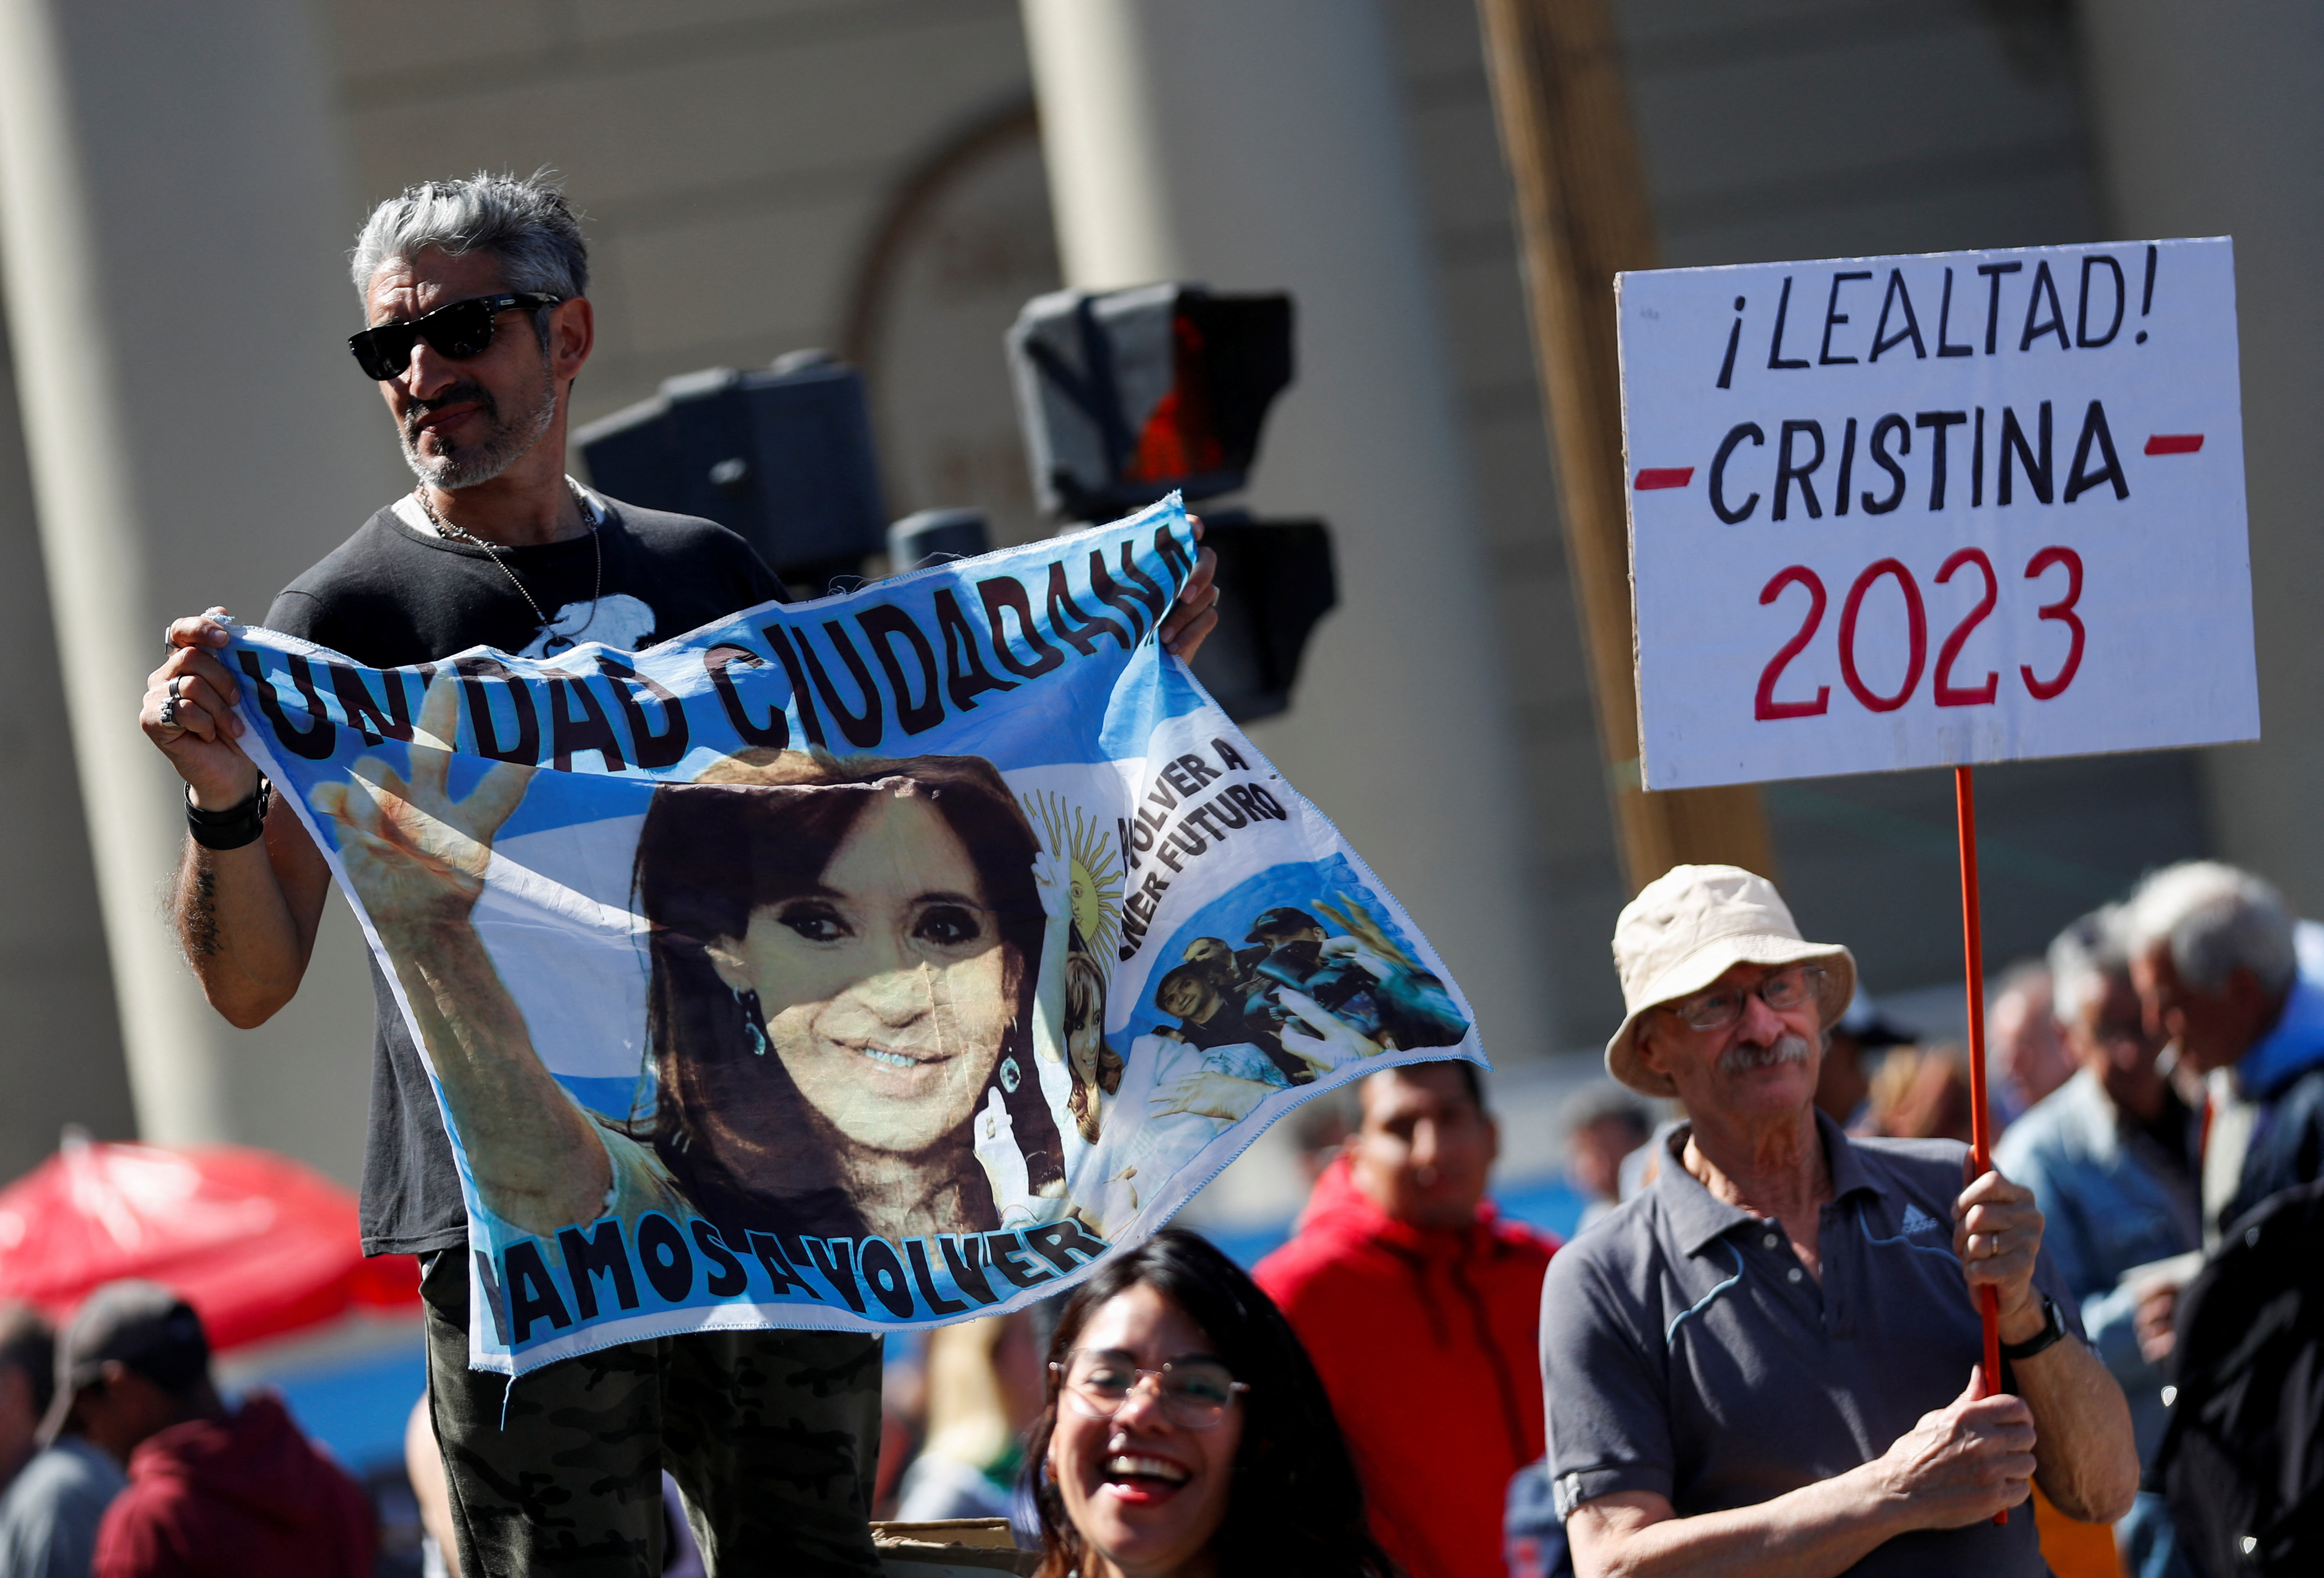 Cristina 2023, una consigna que se repitió en la última marcha a Plaza de Mayo por el 17 de octubre (Foto: Reuters)